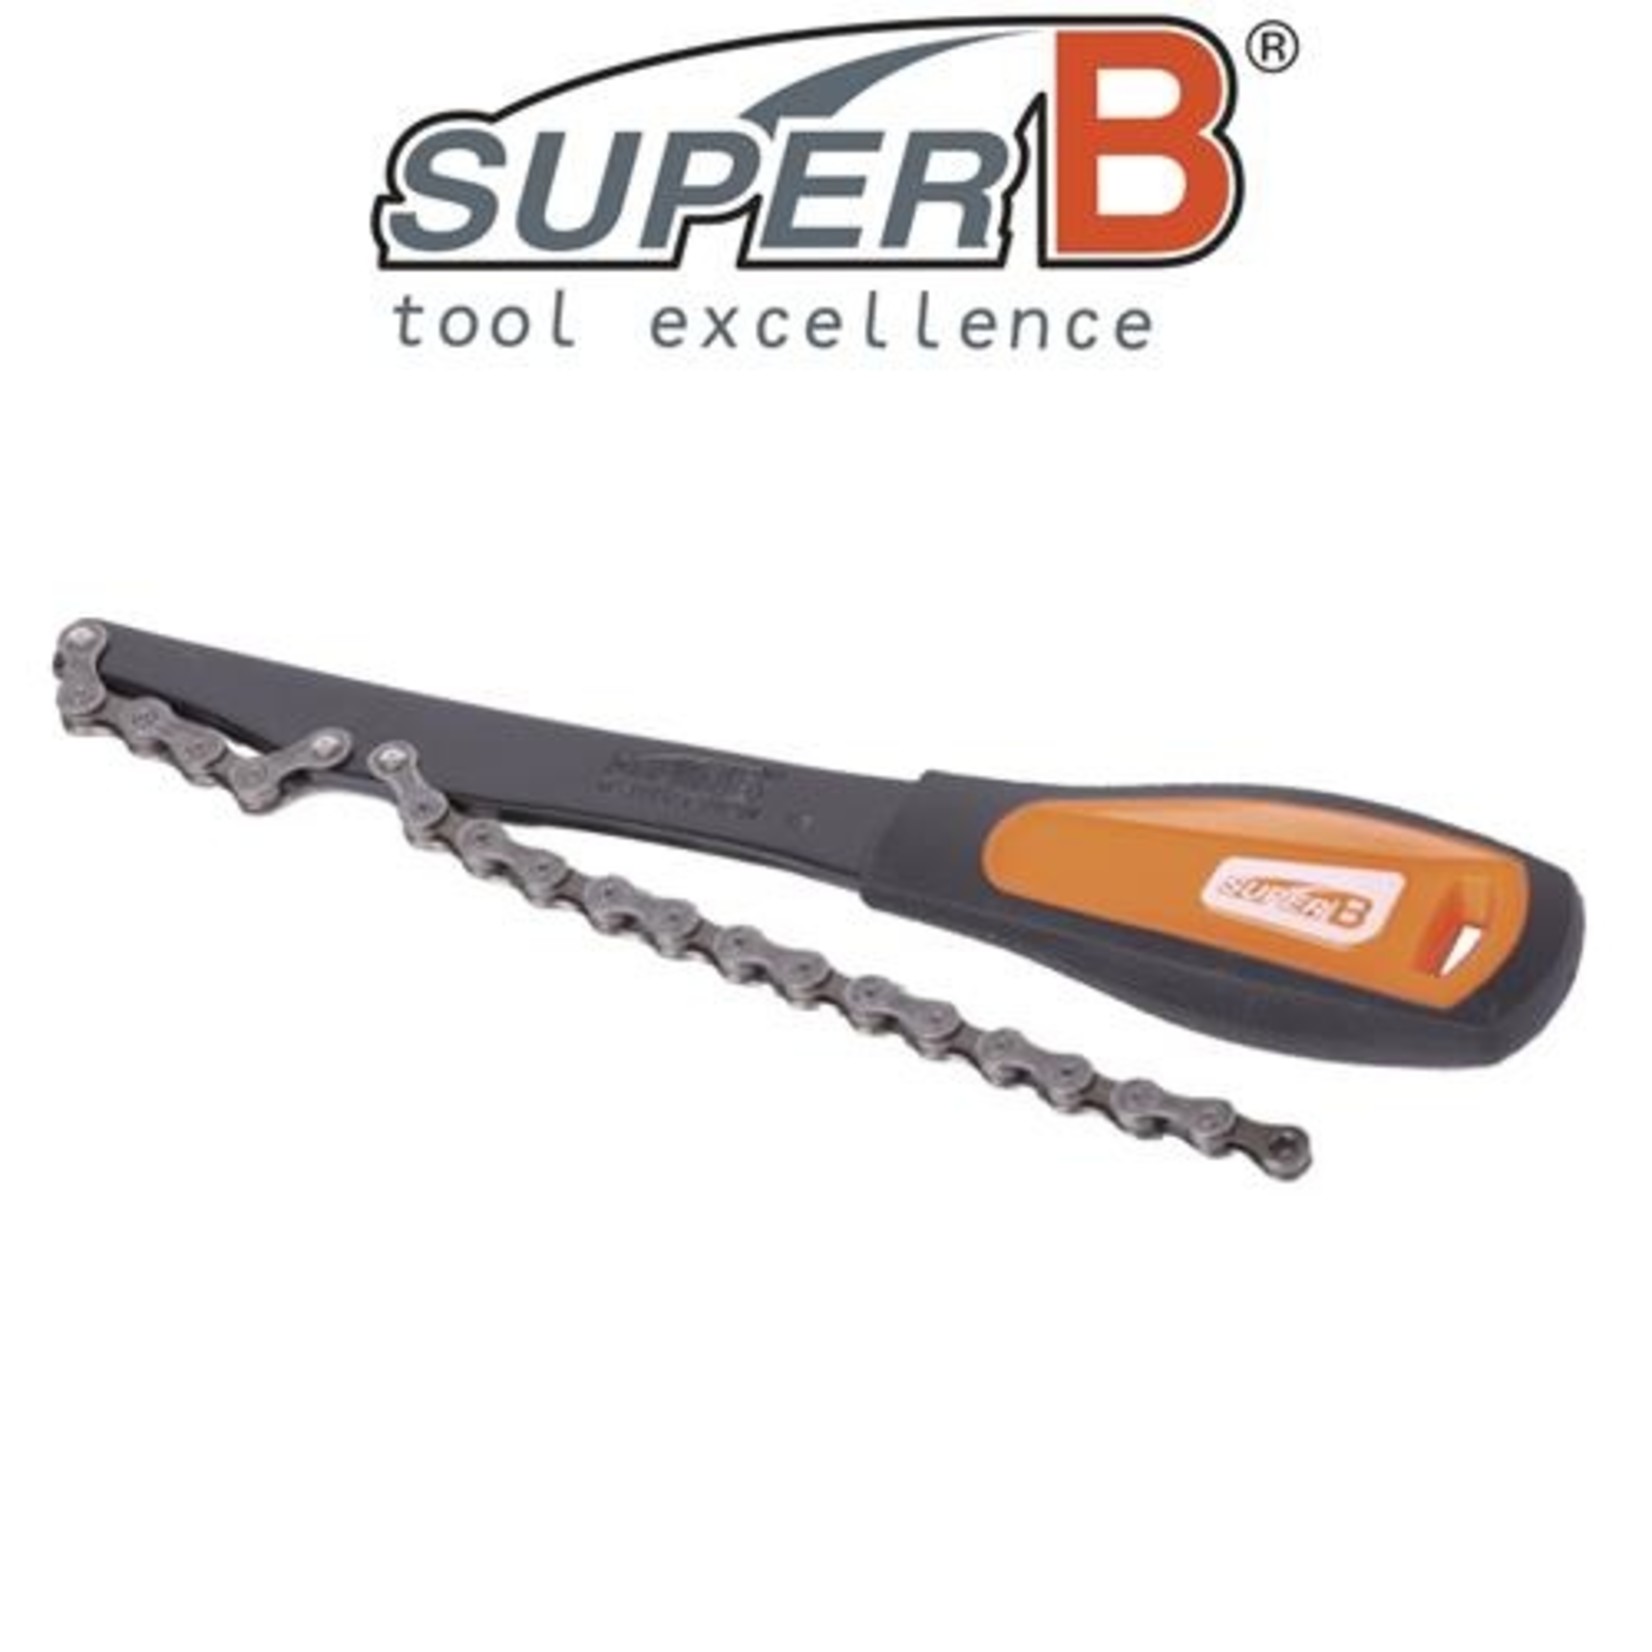 Super B SuperB Freewheel Turner - 9/10/11 Speed Cassette - Bike Tool - Orange/Black